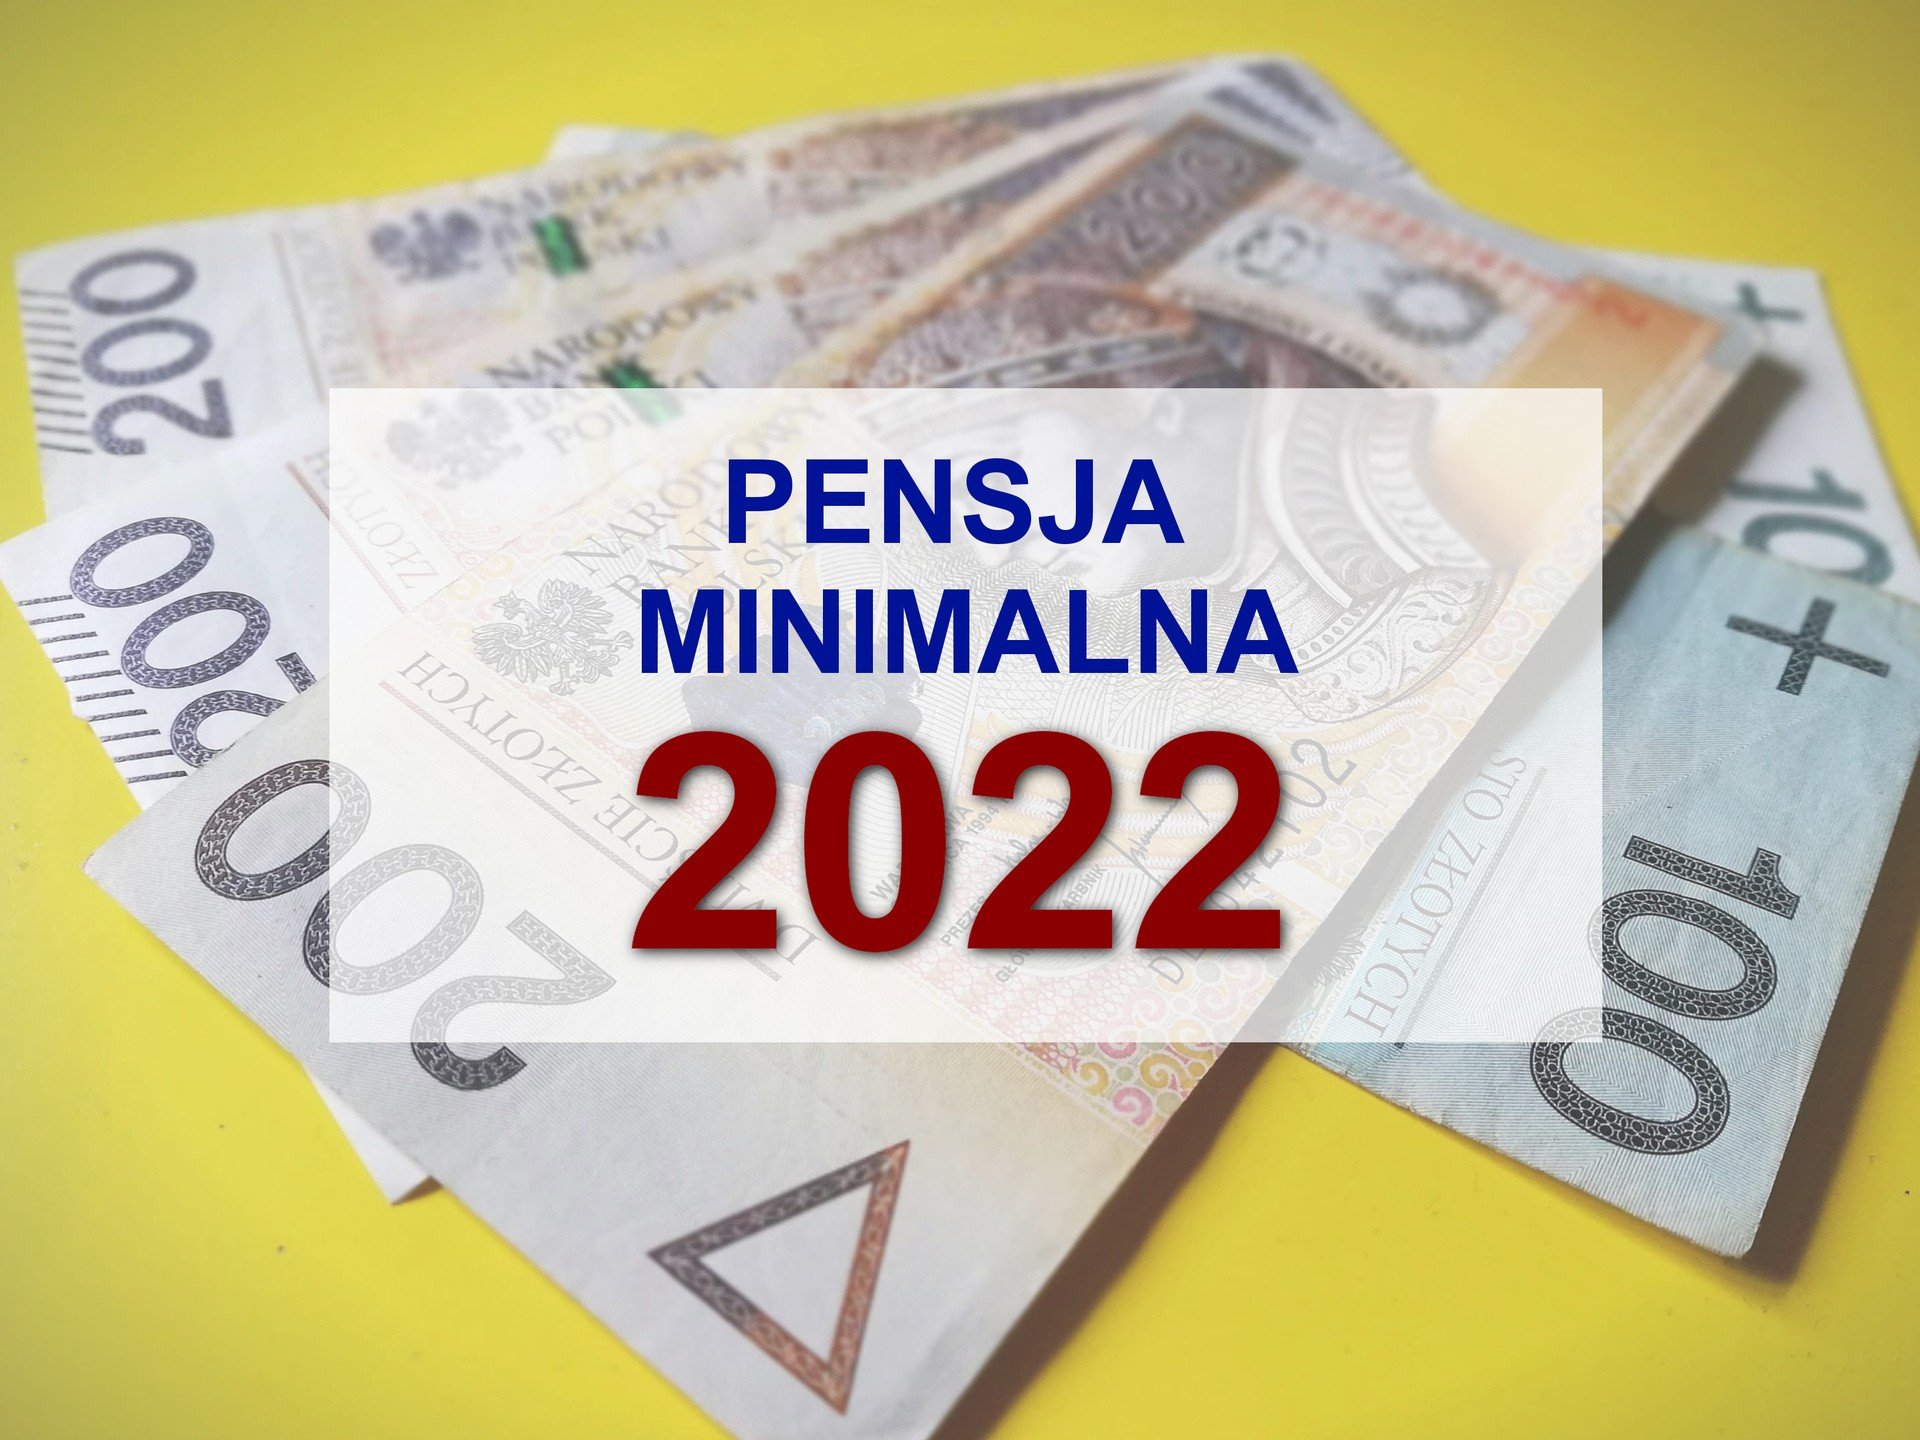 Nowa pensja minimalna 2022. To wyliczenie netto Cię zaskoczy - dostaniesz  więcej | Express Bydgoski